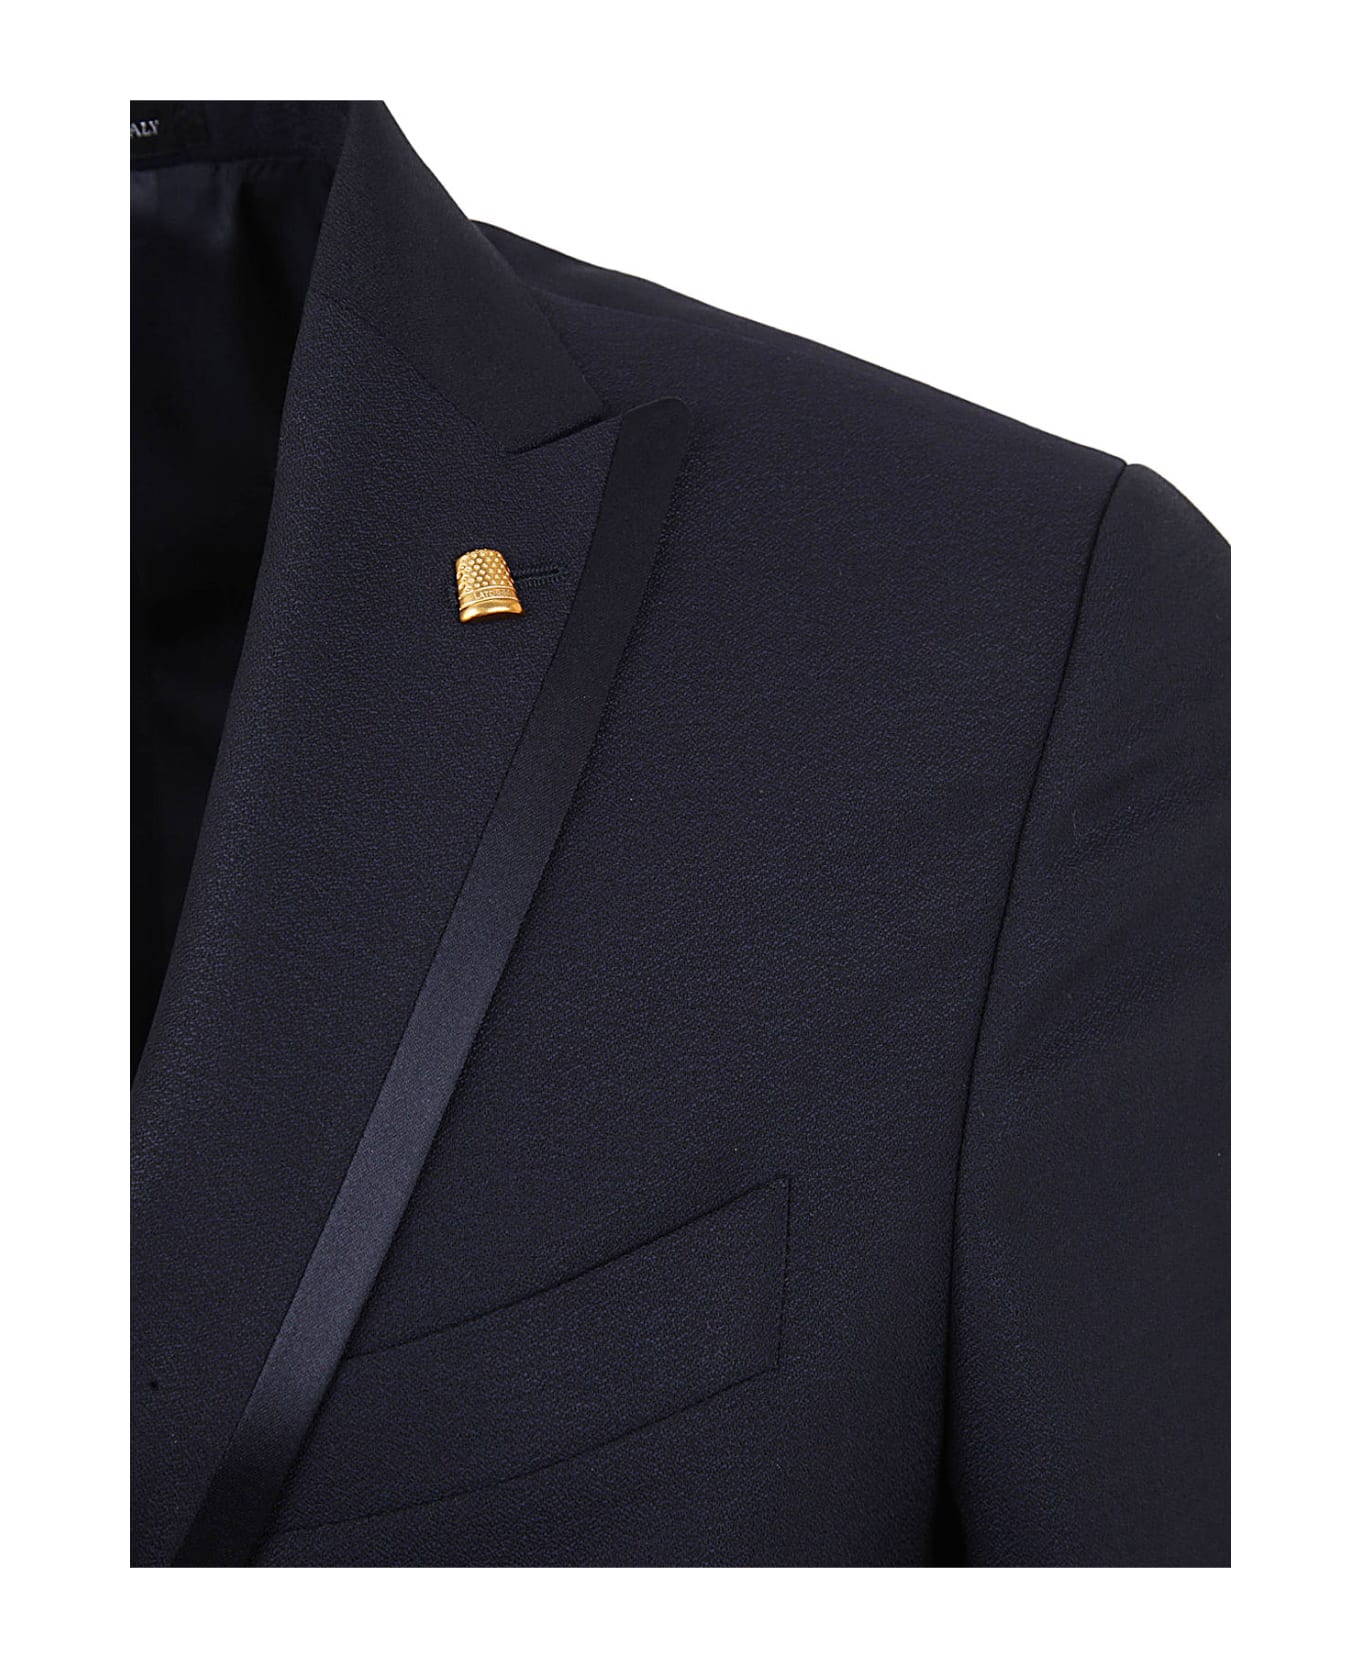 Sartoria Latorre Piping Suit - Blue スーツ